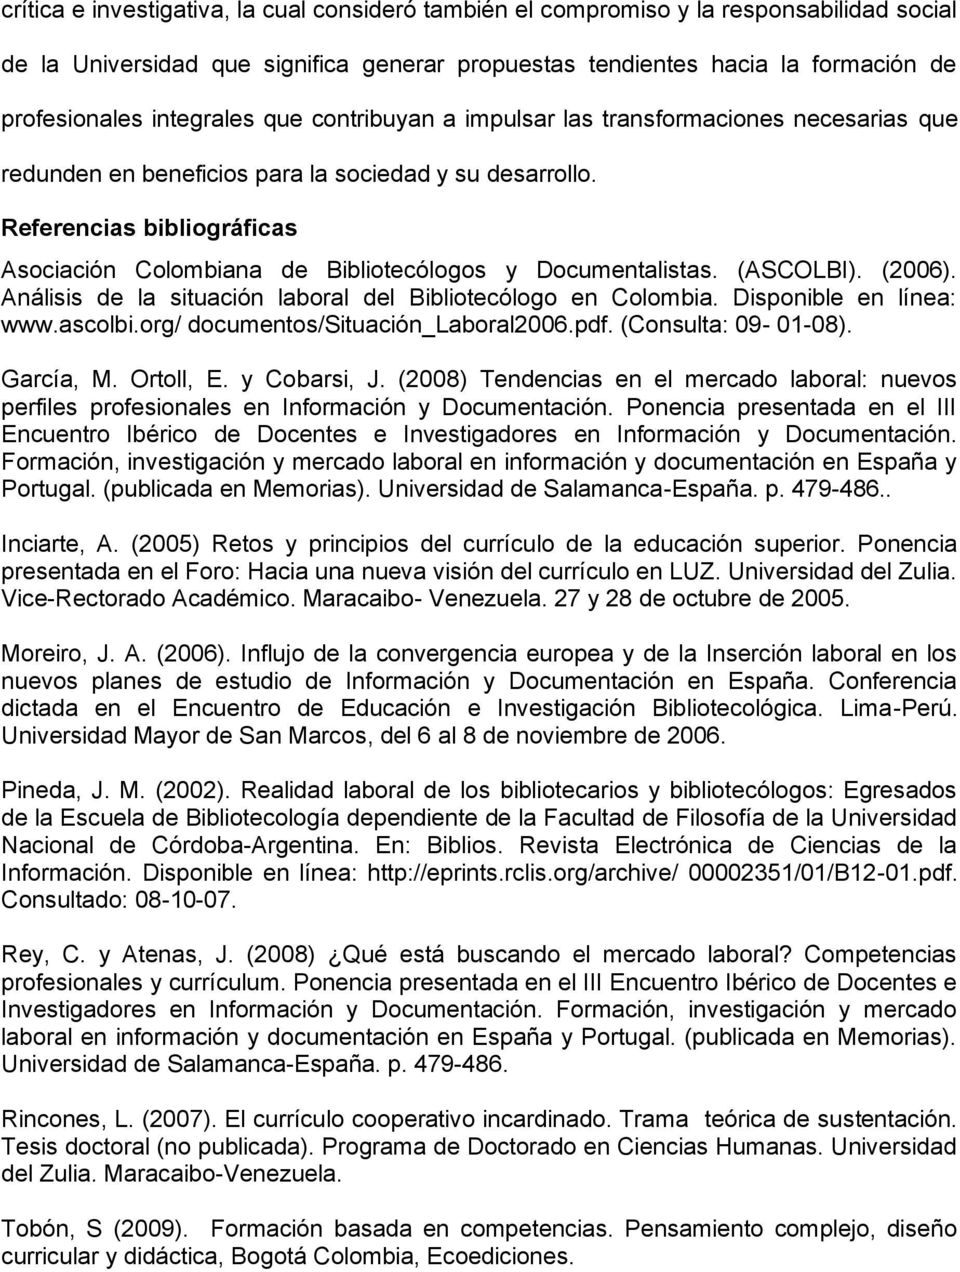 Referencias bibliográficas Asociación Colombiana de Bibliotecólogos y Documentalistas. (ASCOLBI). (2006). Análisis de la situación laboral del Bibliotecólogo en Colombia. Disponible en línea: www.